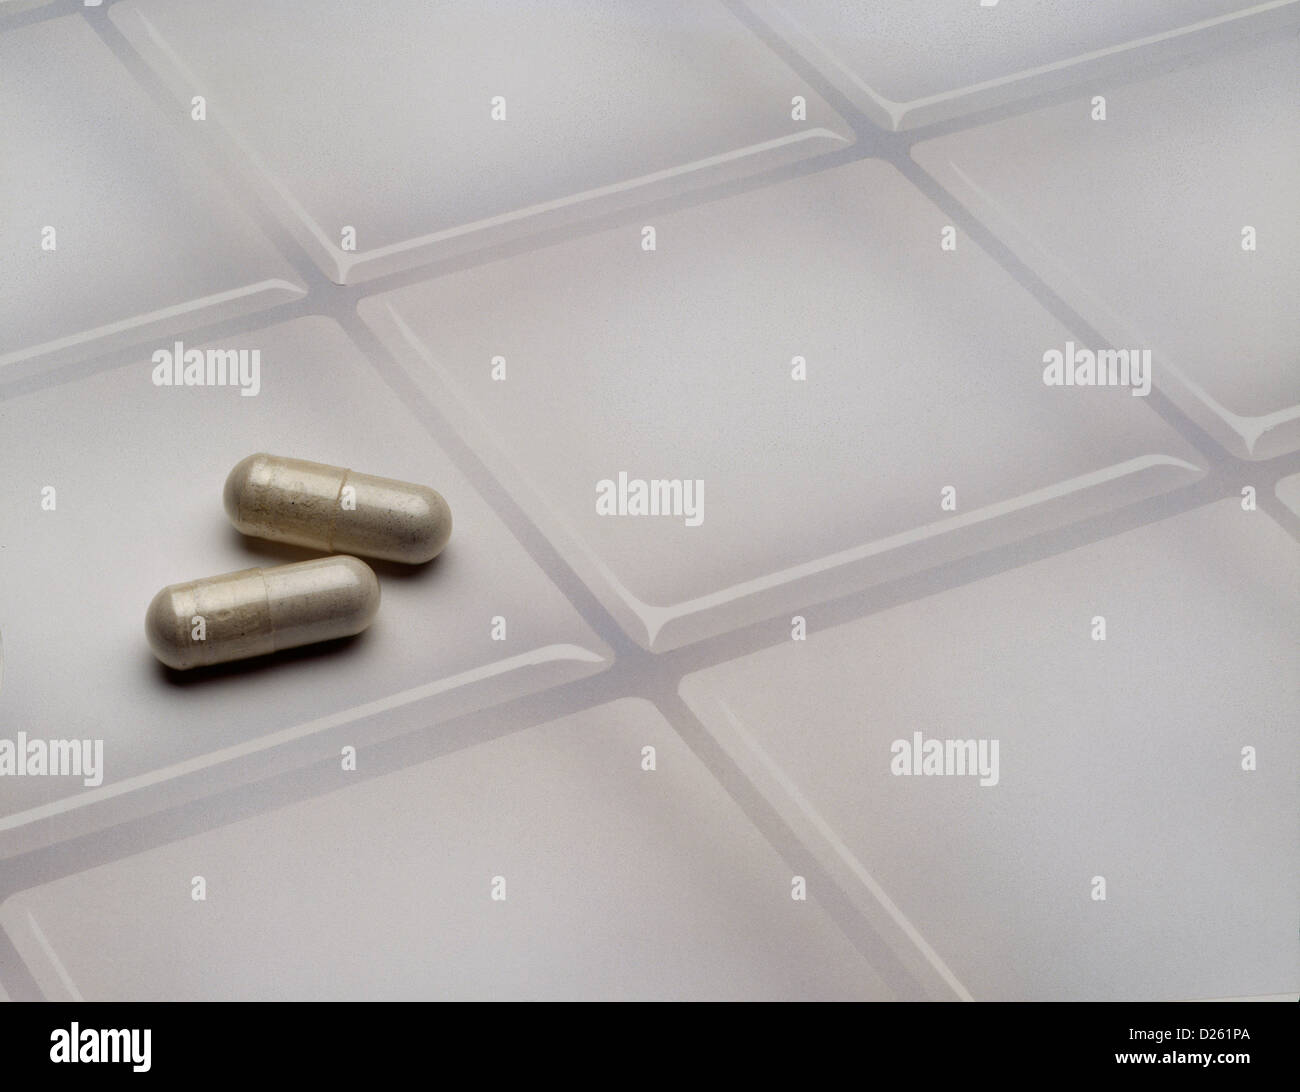 Pills on tile Stock Photo